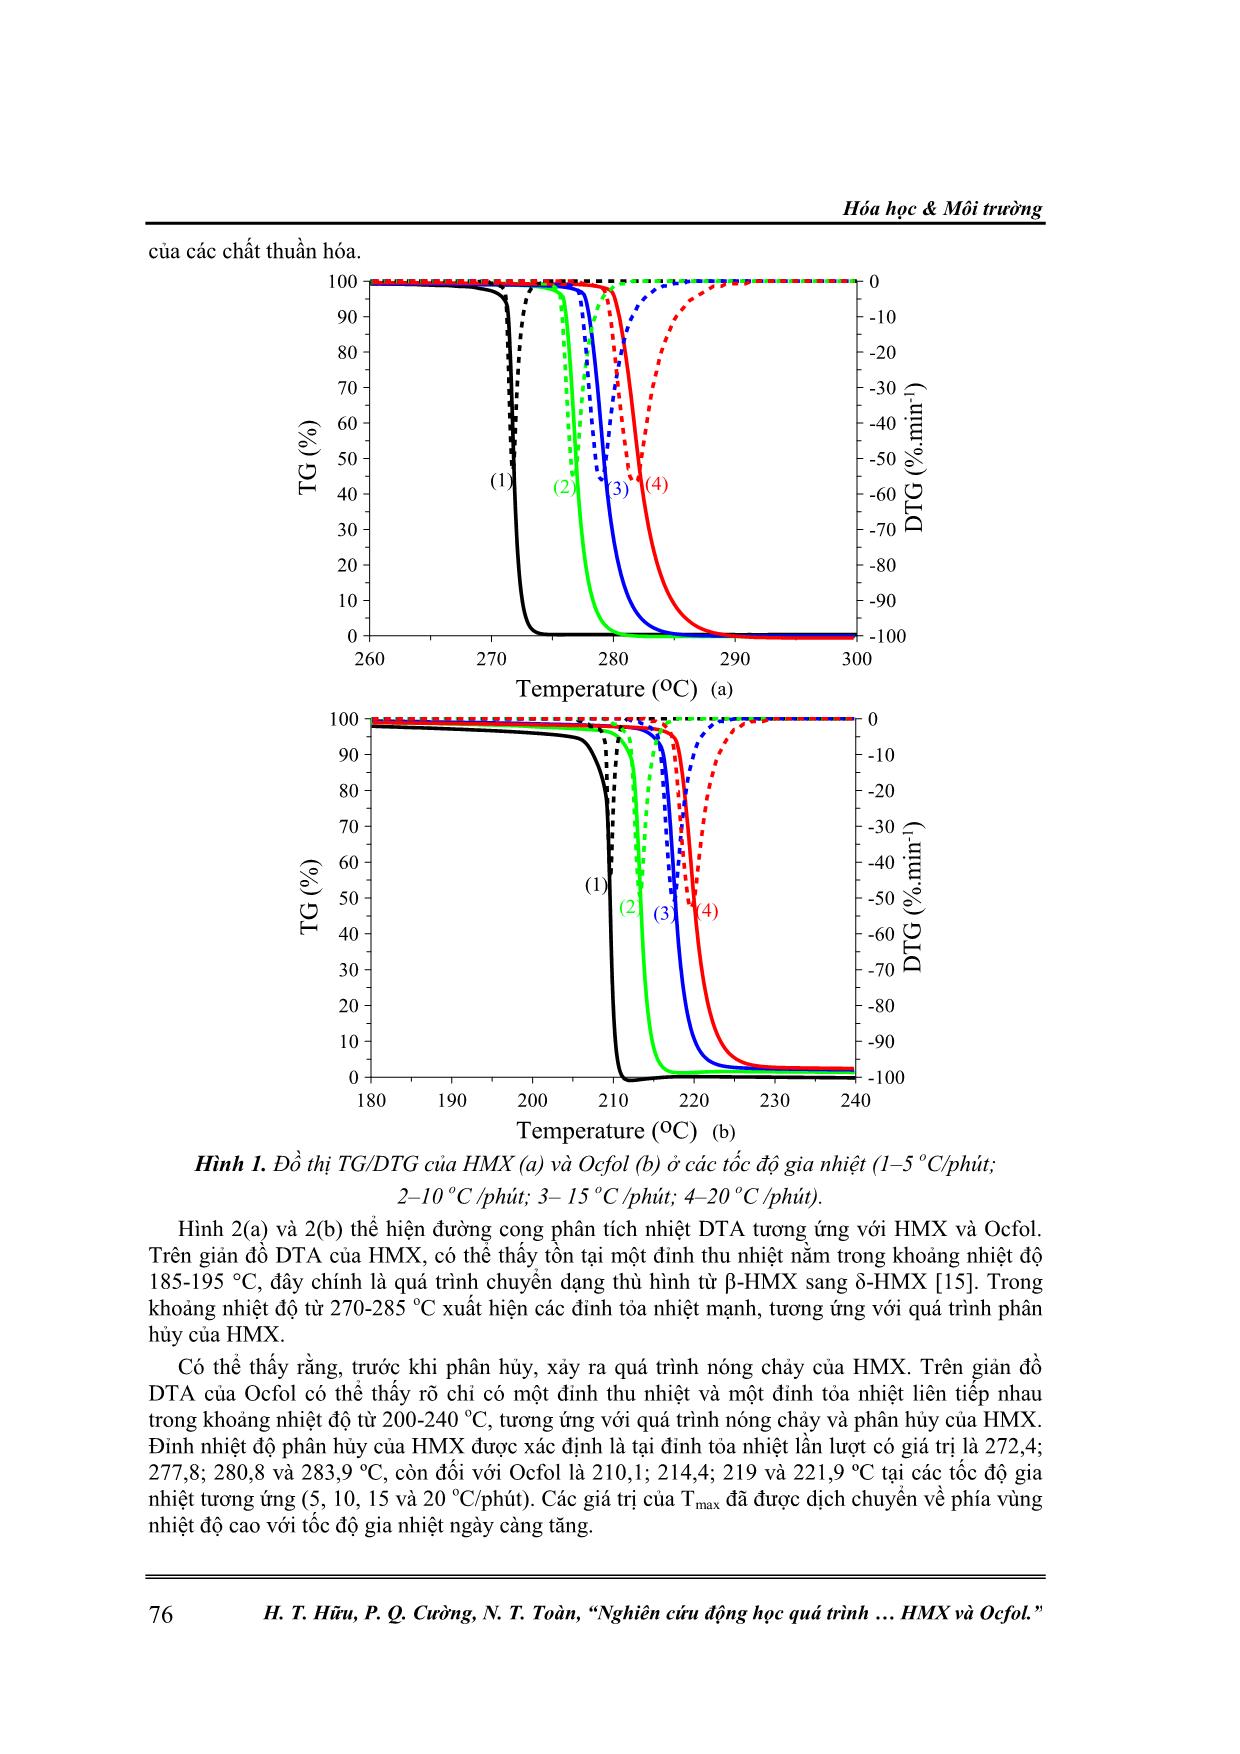 Nghiên cứu động học quá trình phân hủy nhiệt của thuốc nổ HMX và Ocfol trang 4